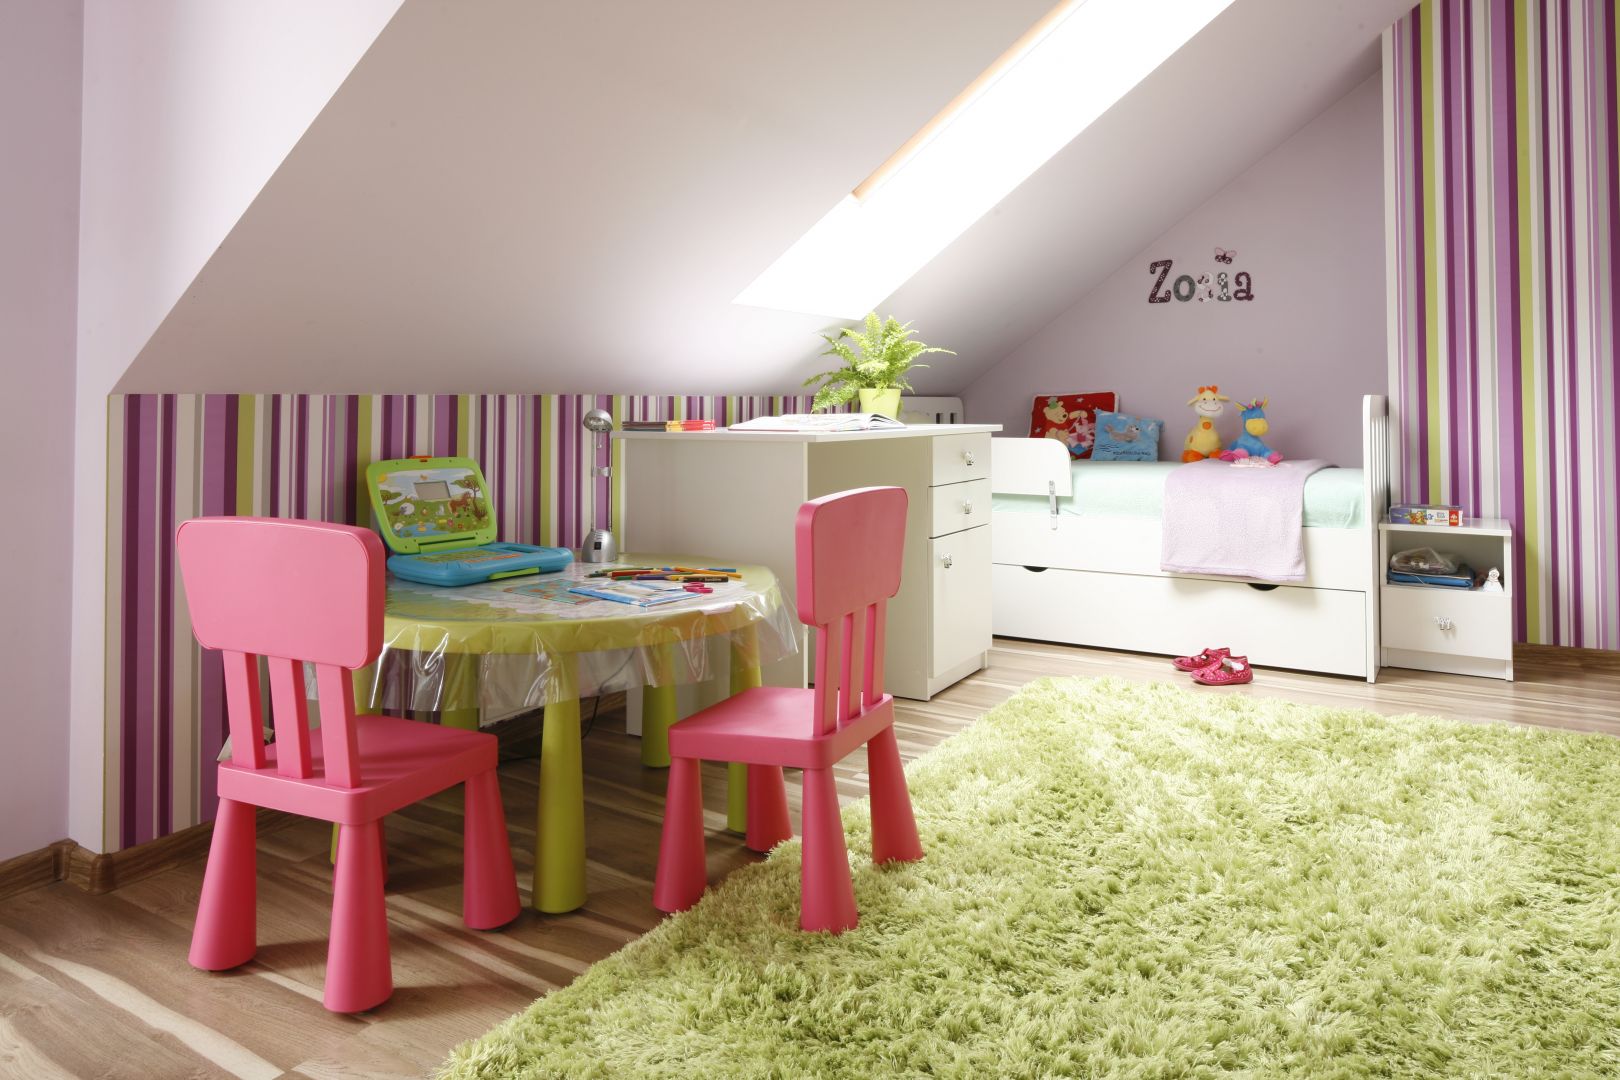 Stonowana i ciepła kolorystyka wnętrza i mebli zapewnia dziecku spokój i wyciszenie.  Projekt: Marta Kilan Fot. Bartosz Jarosz